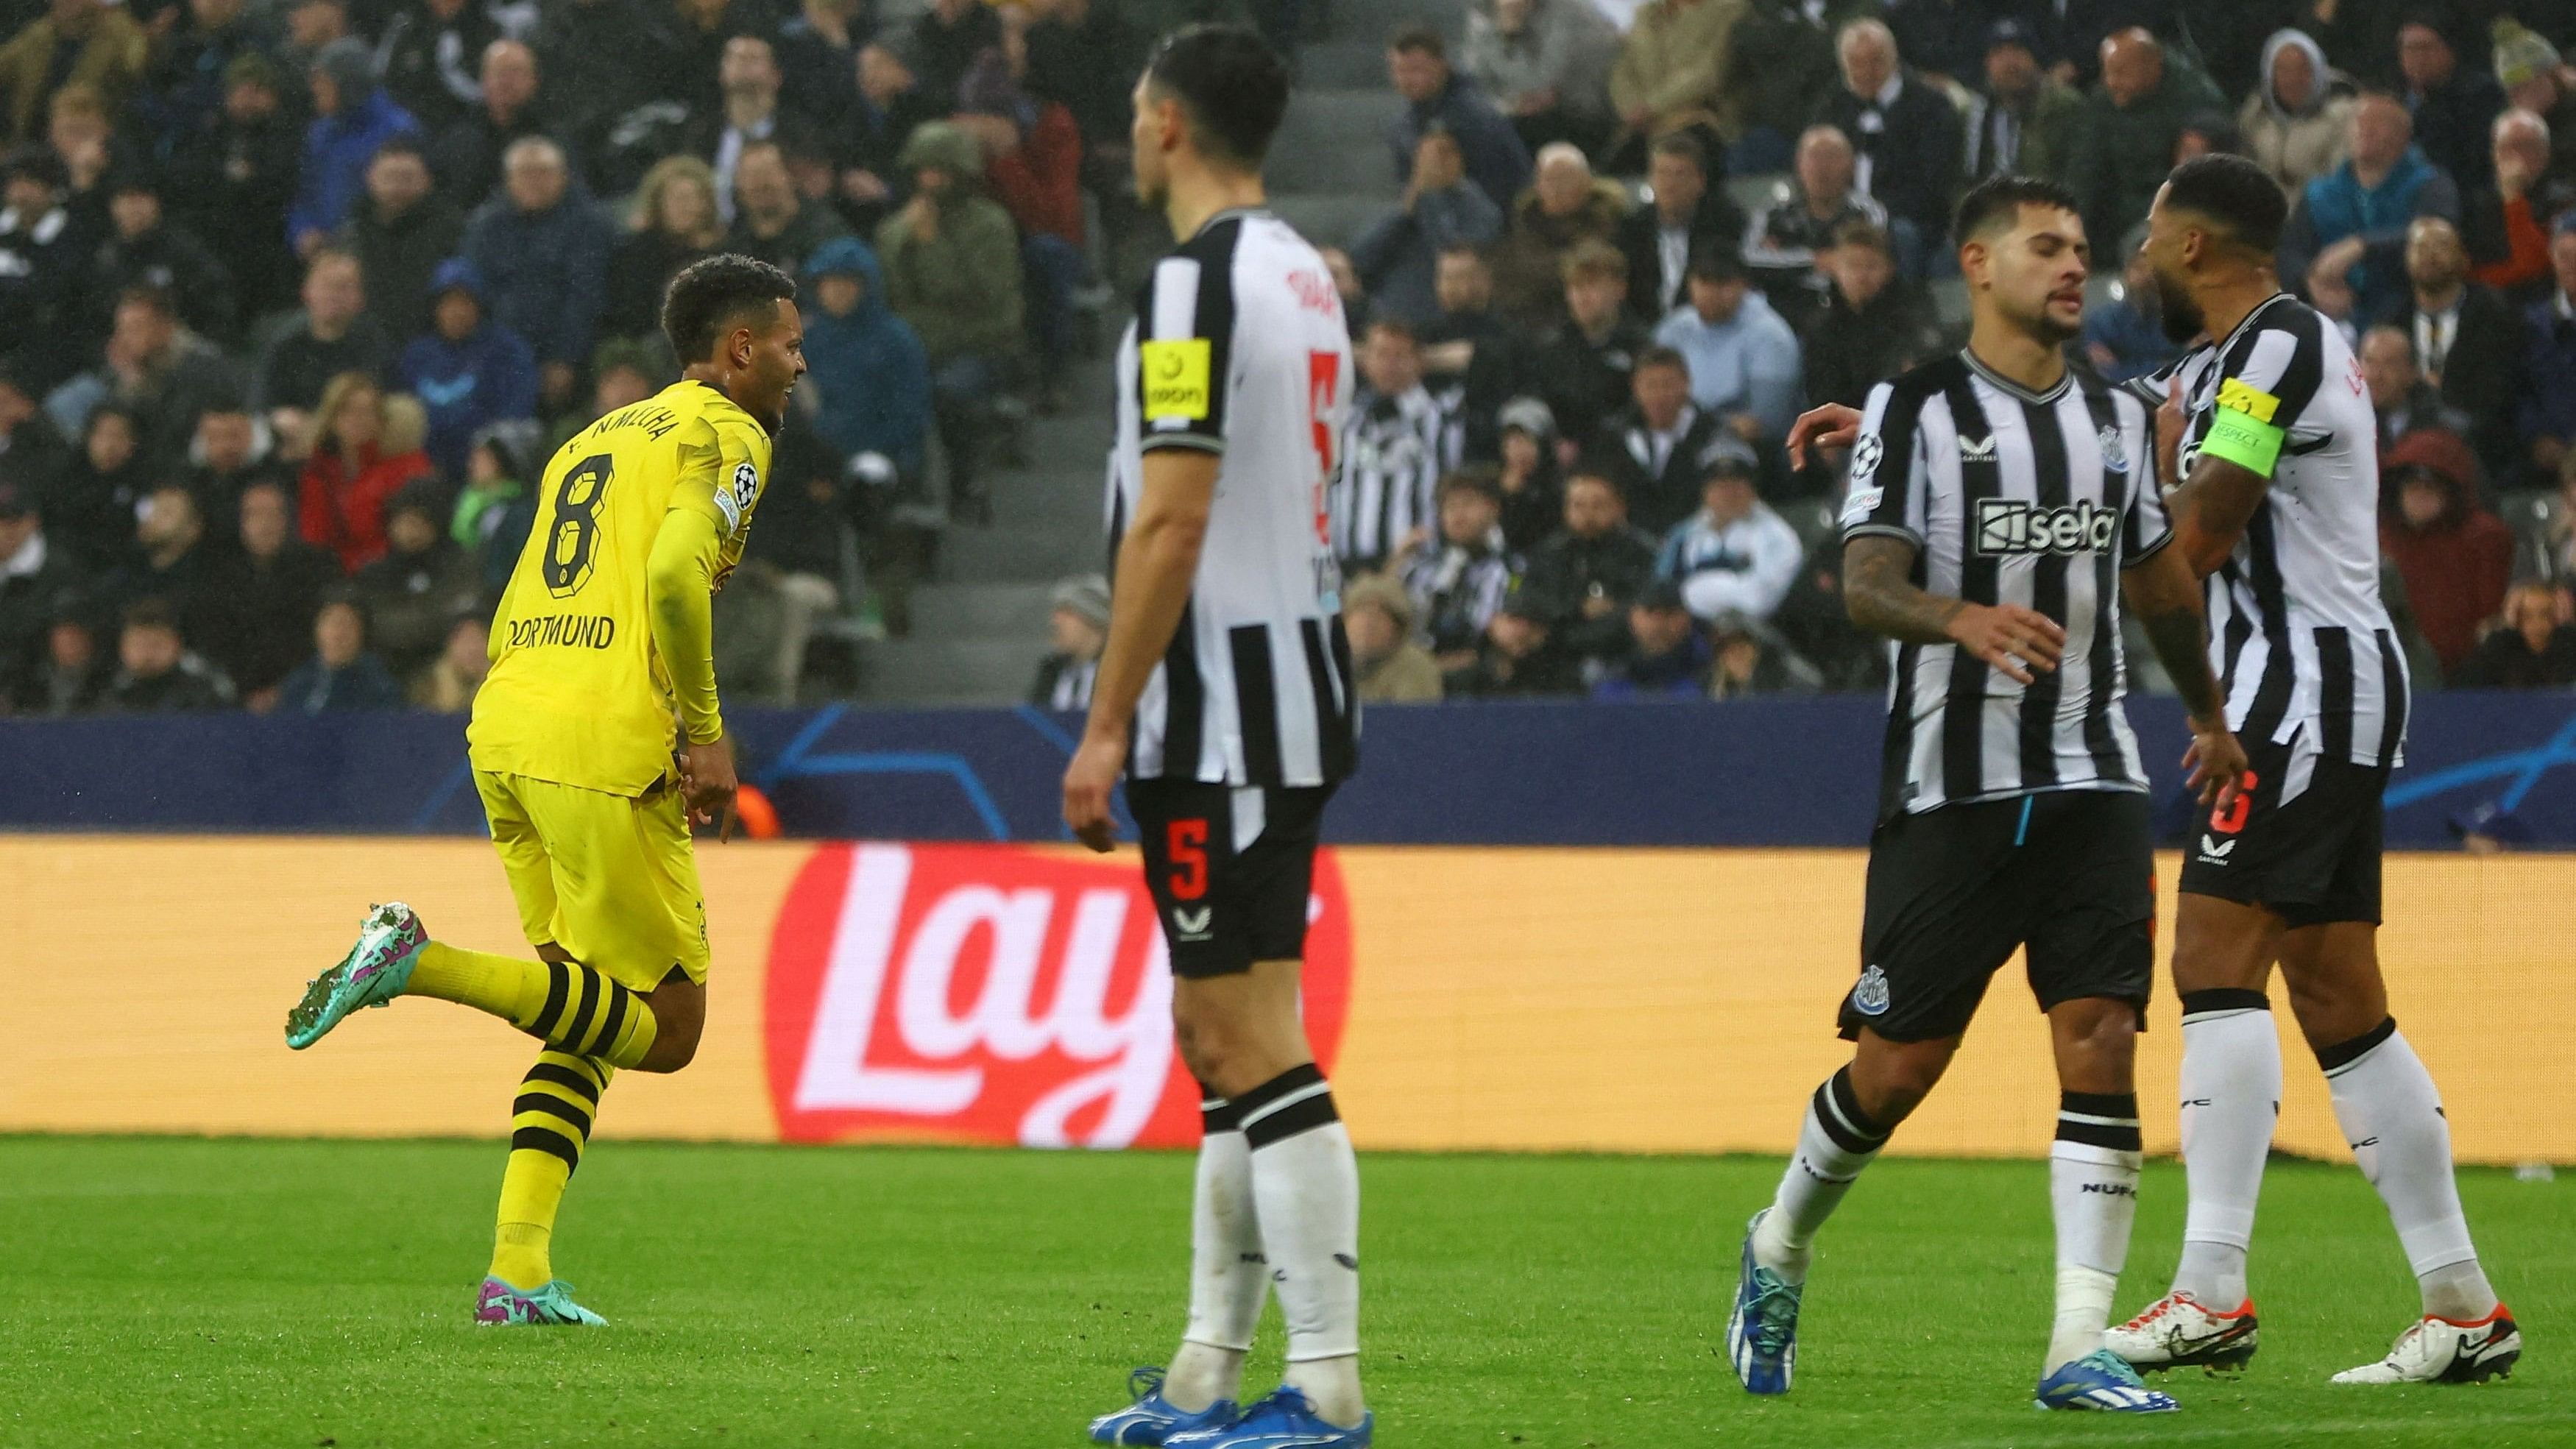 <div class="paragraphs"><p>Borussia Dortmund's Felix Nmecha celebrates scoring their first goal.</p></div>